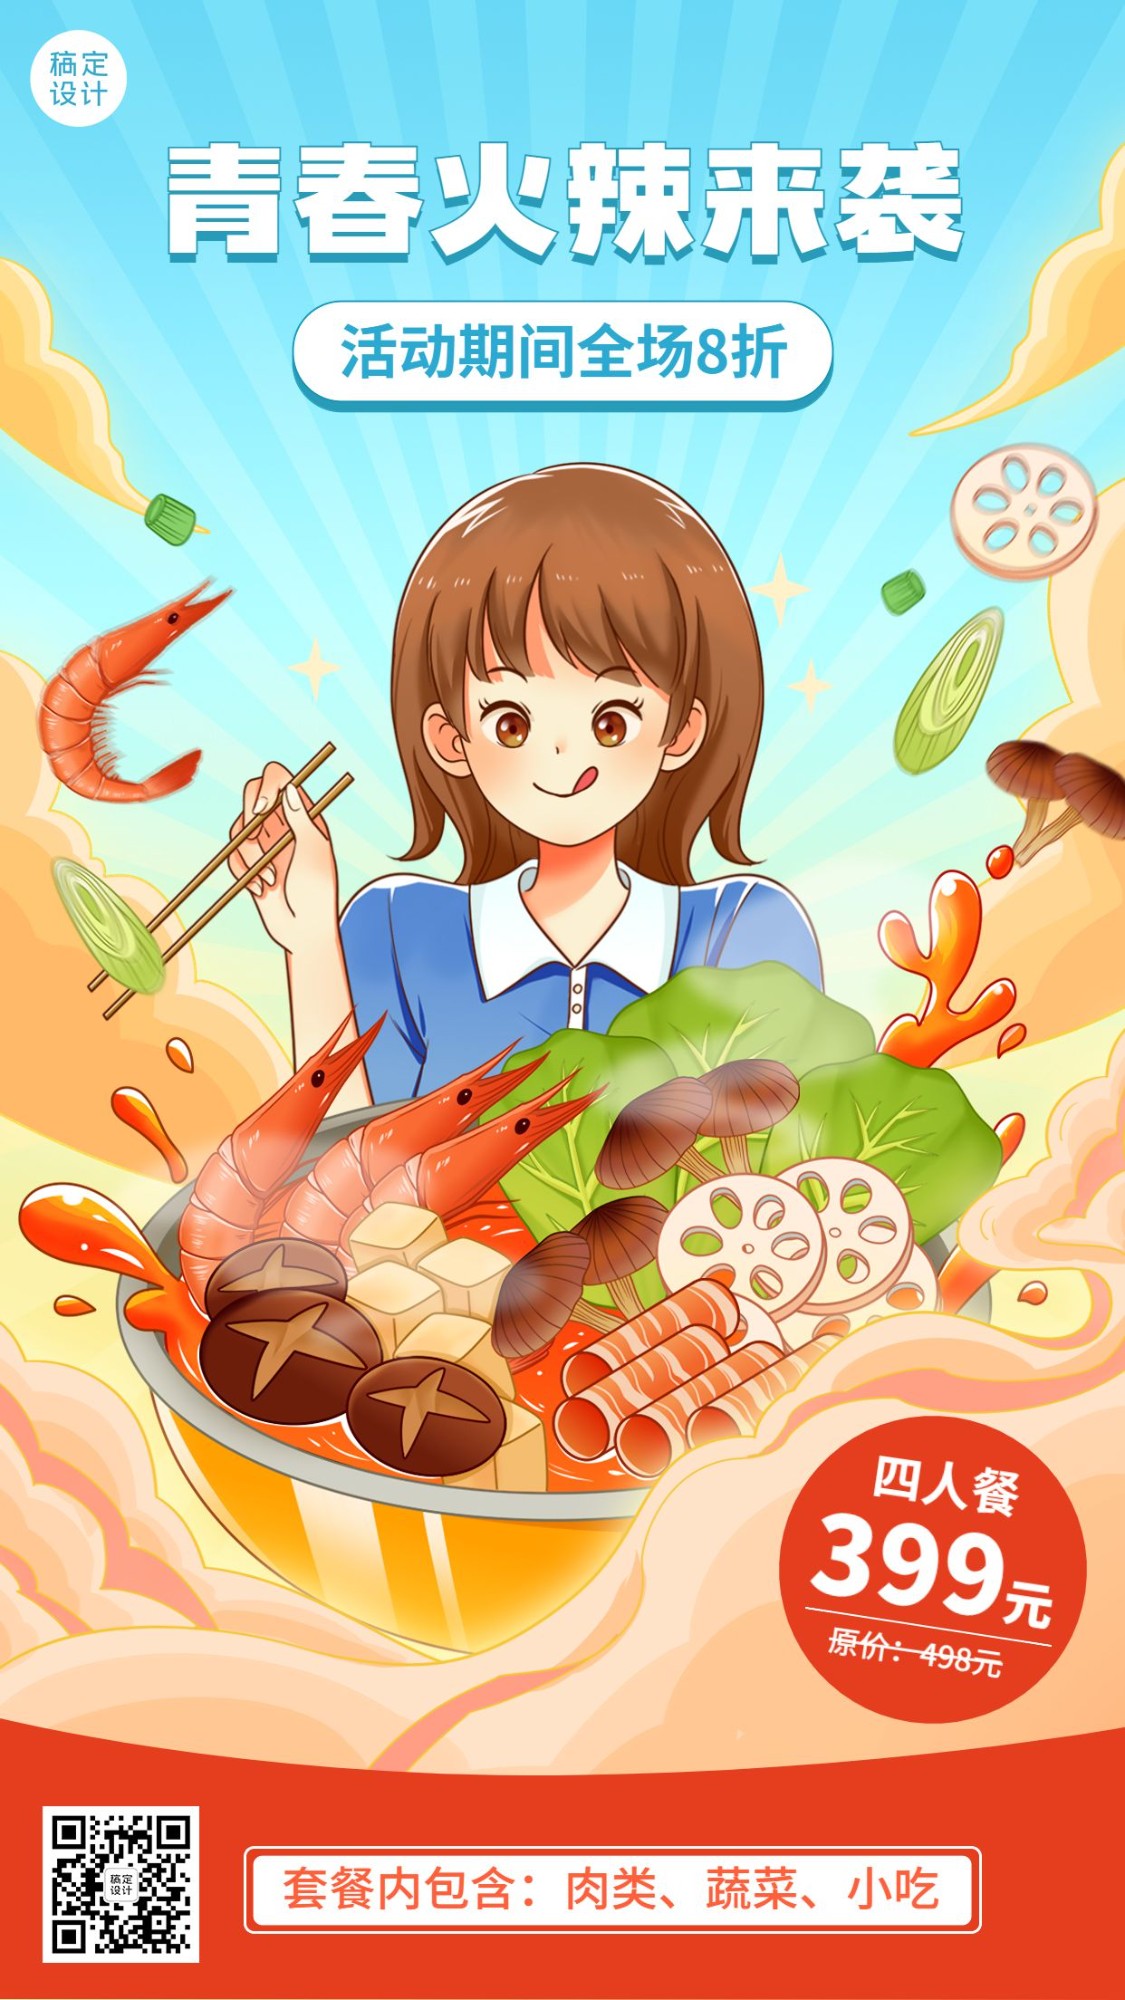 五四青年节餐饮火锅产品促销手机海报预览效果